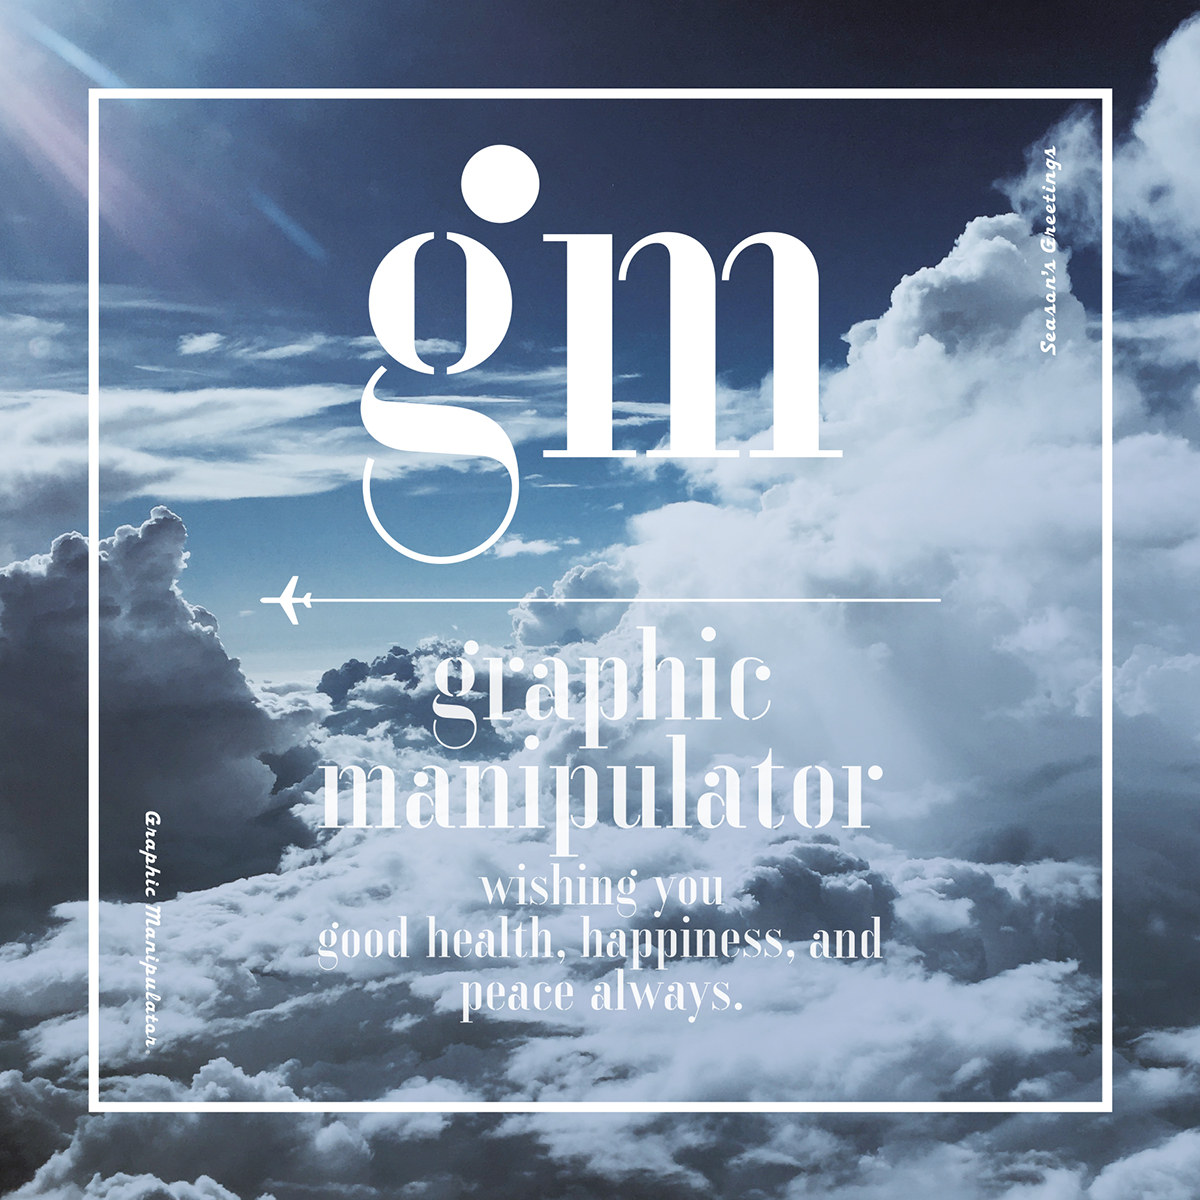 Graphic Manipulator “2019 NYG”